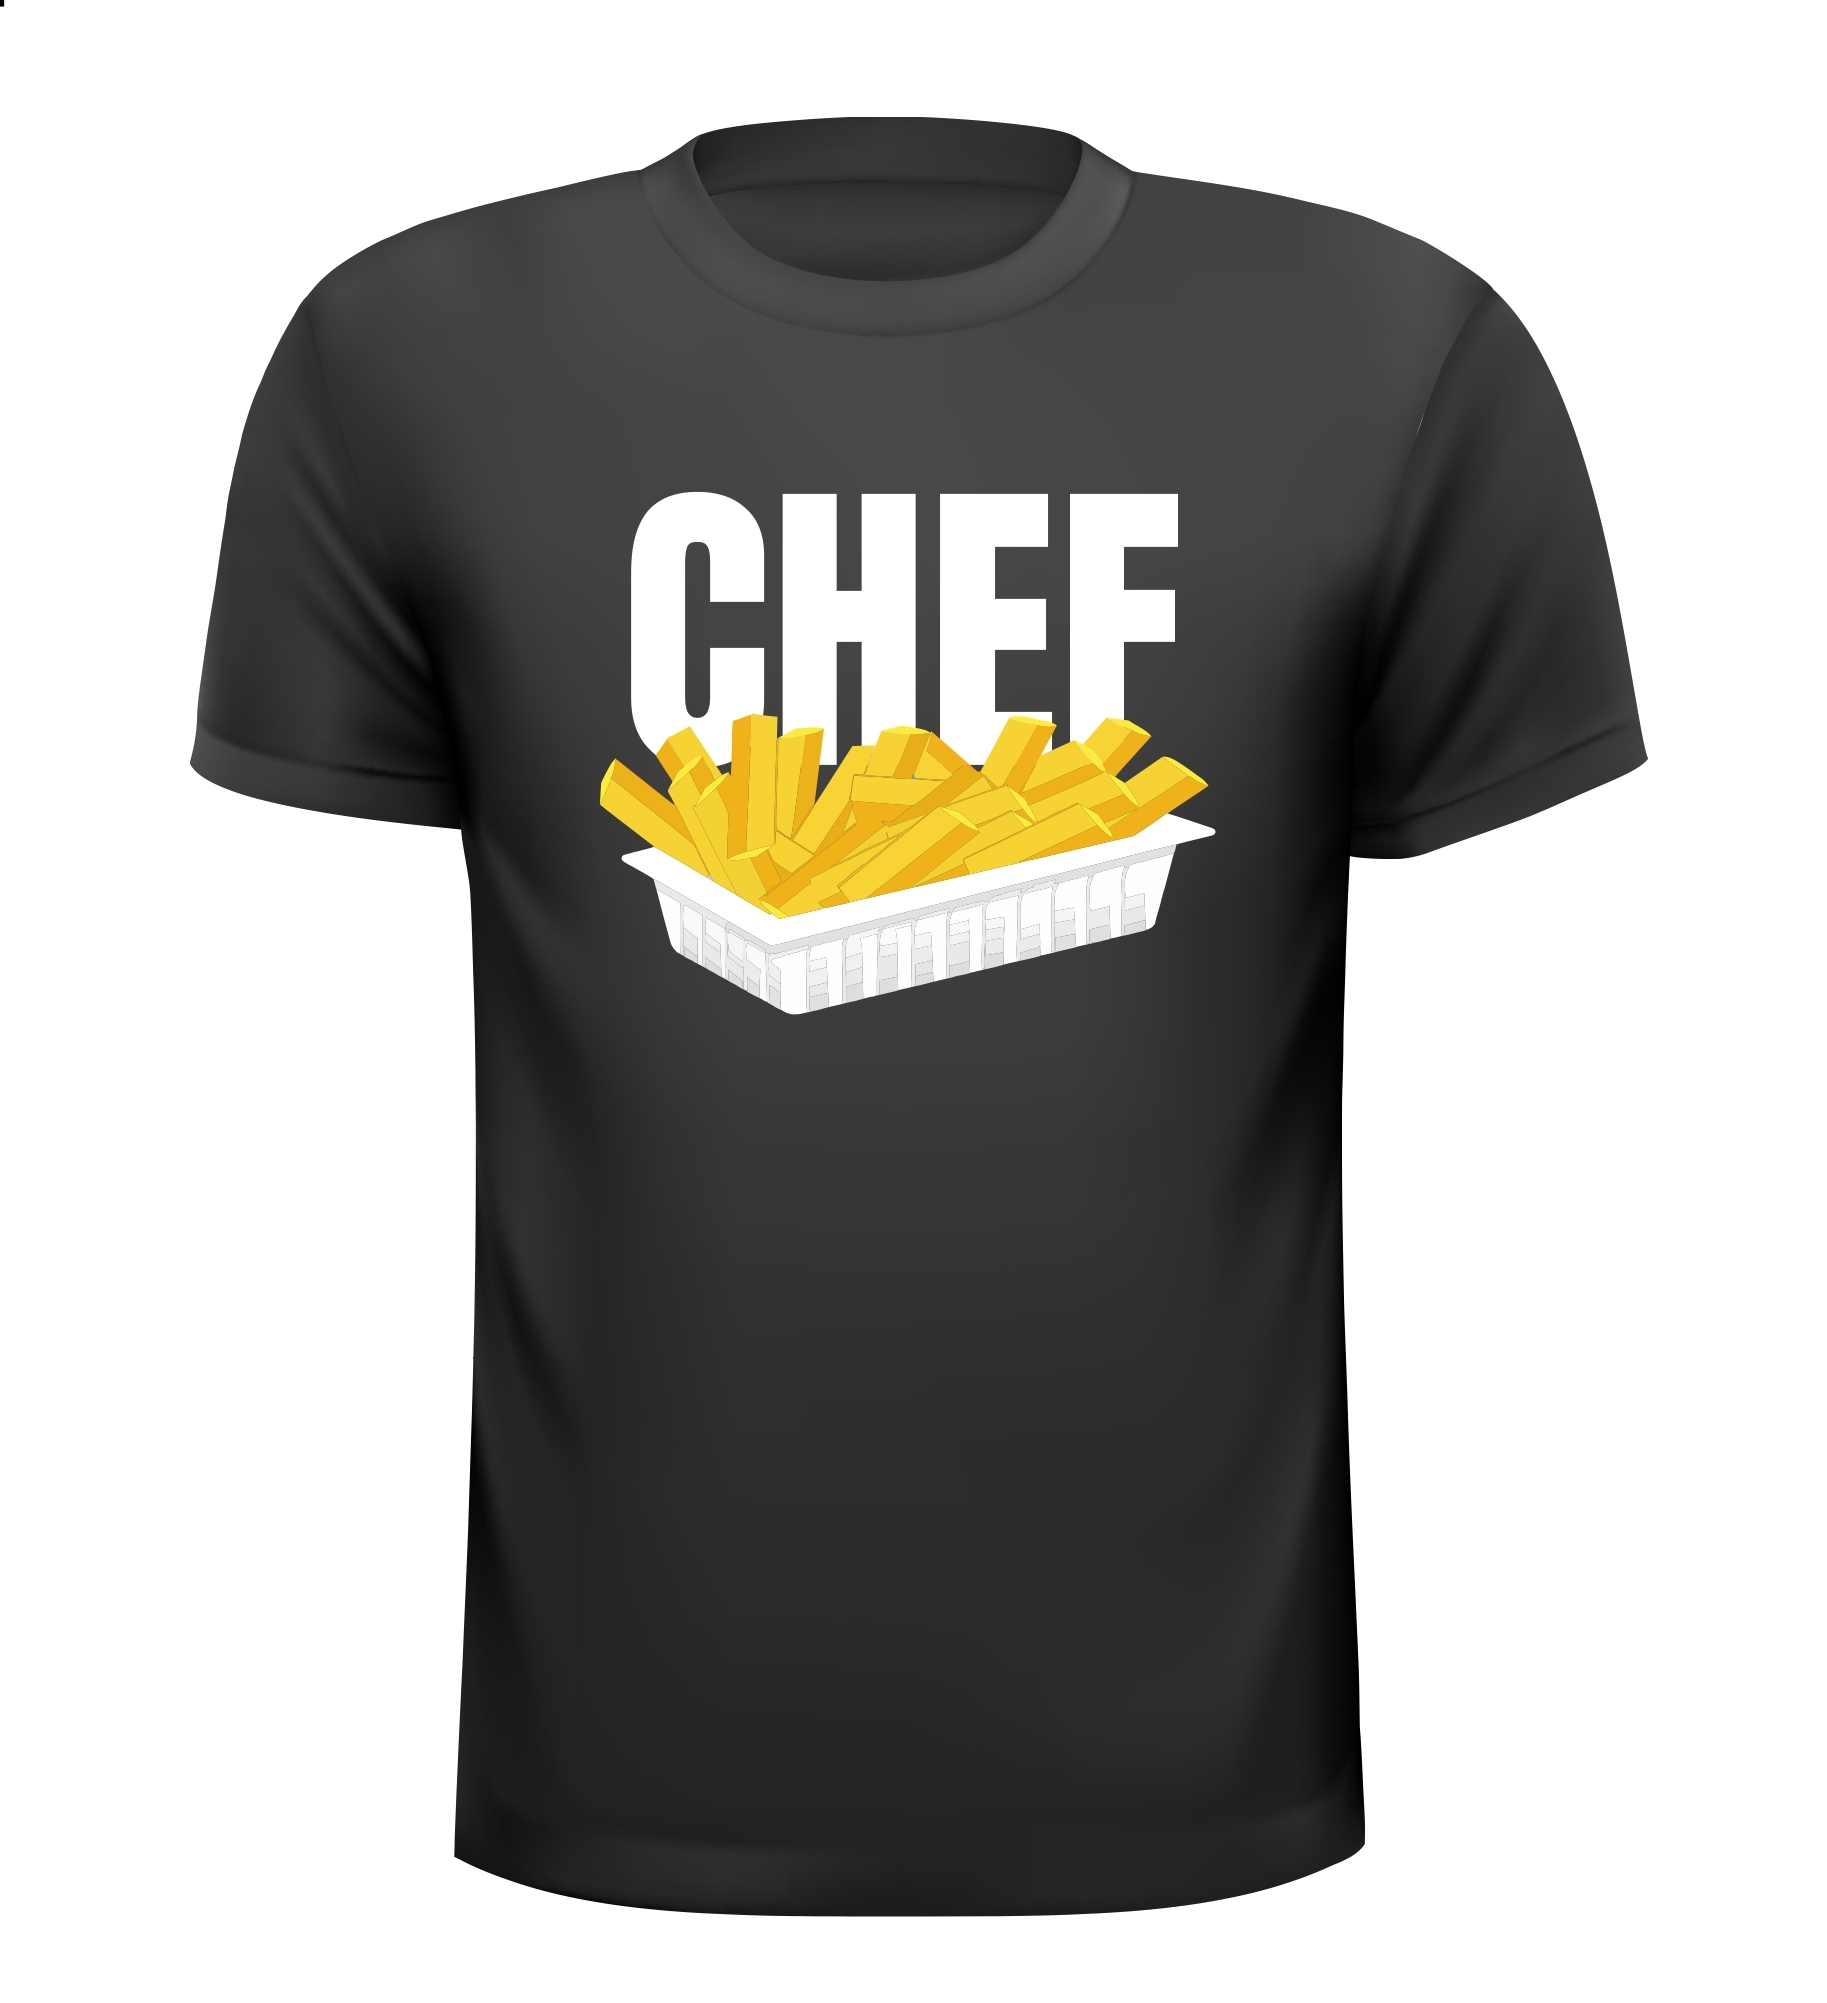 Shirtje voor chef friet T-shirt voor chef patat